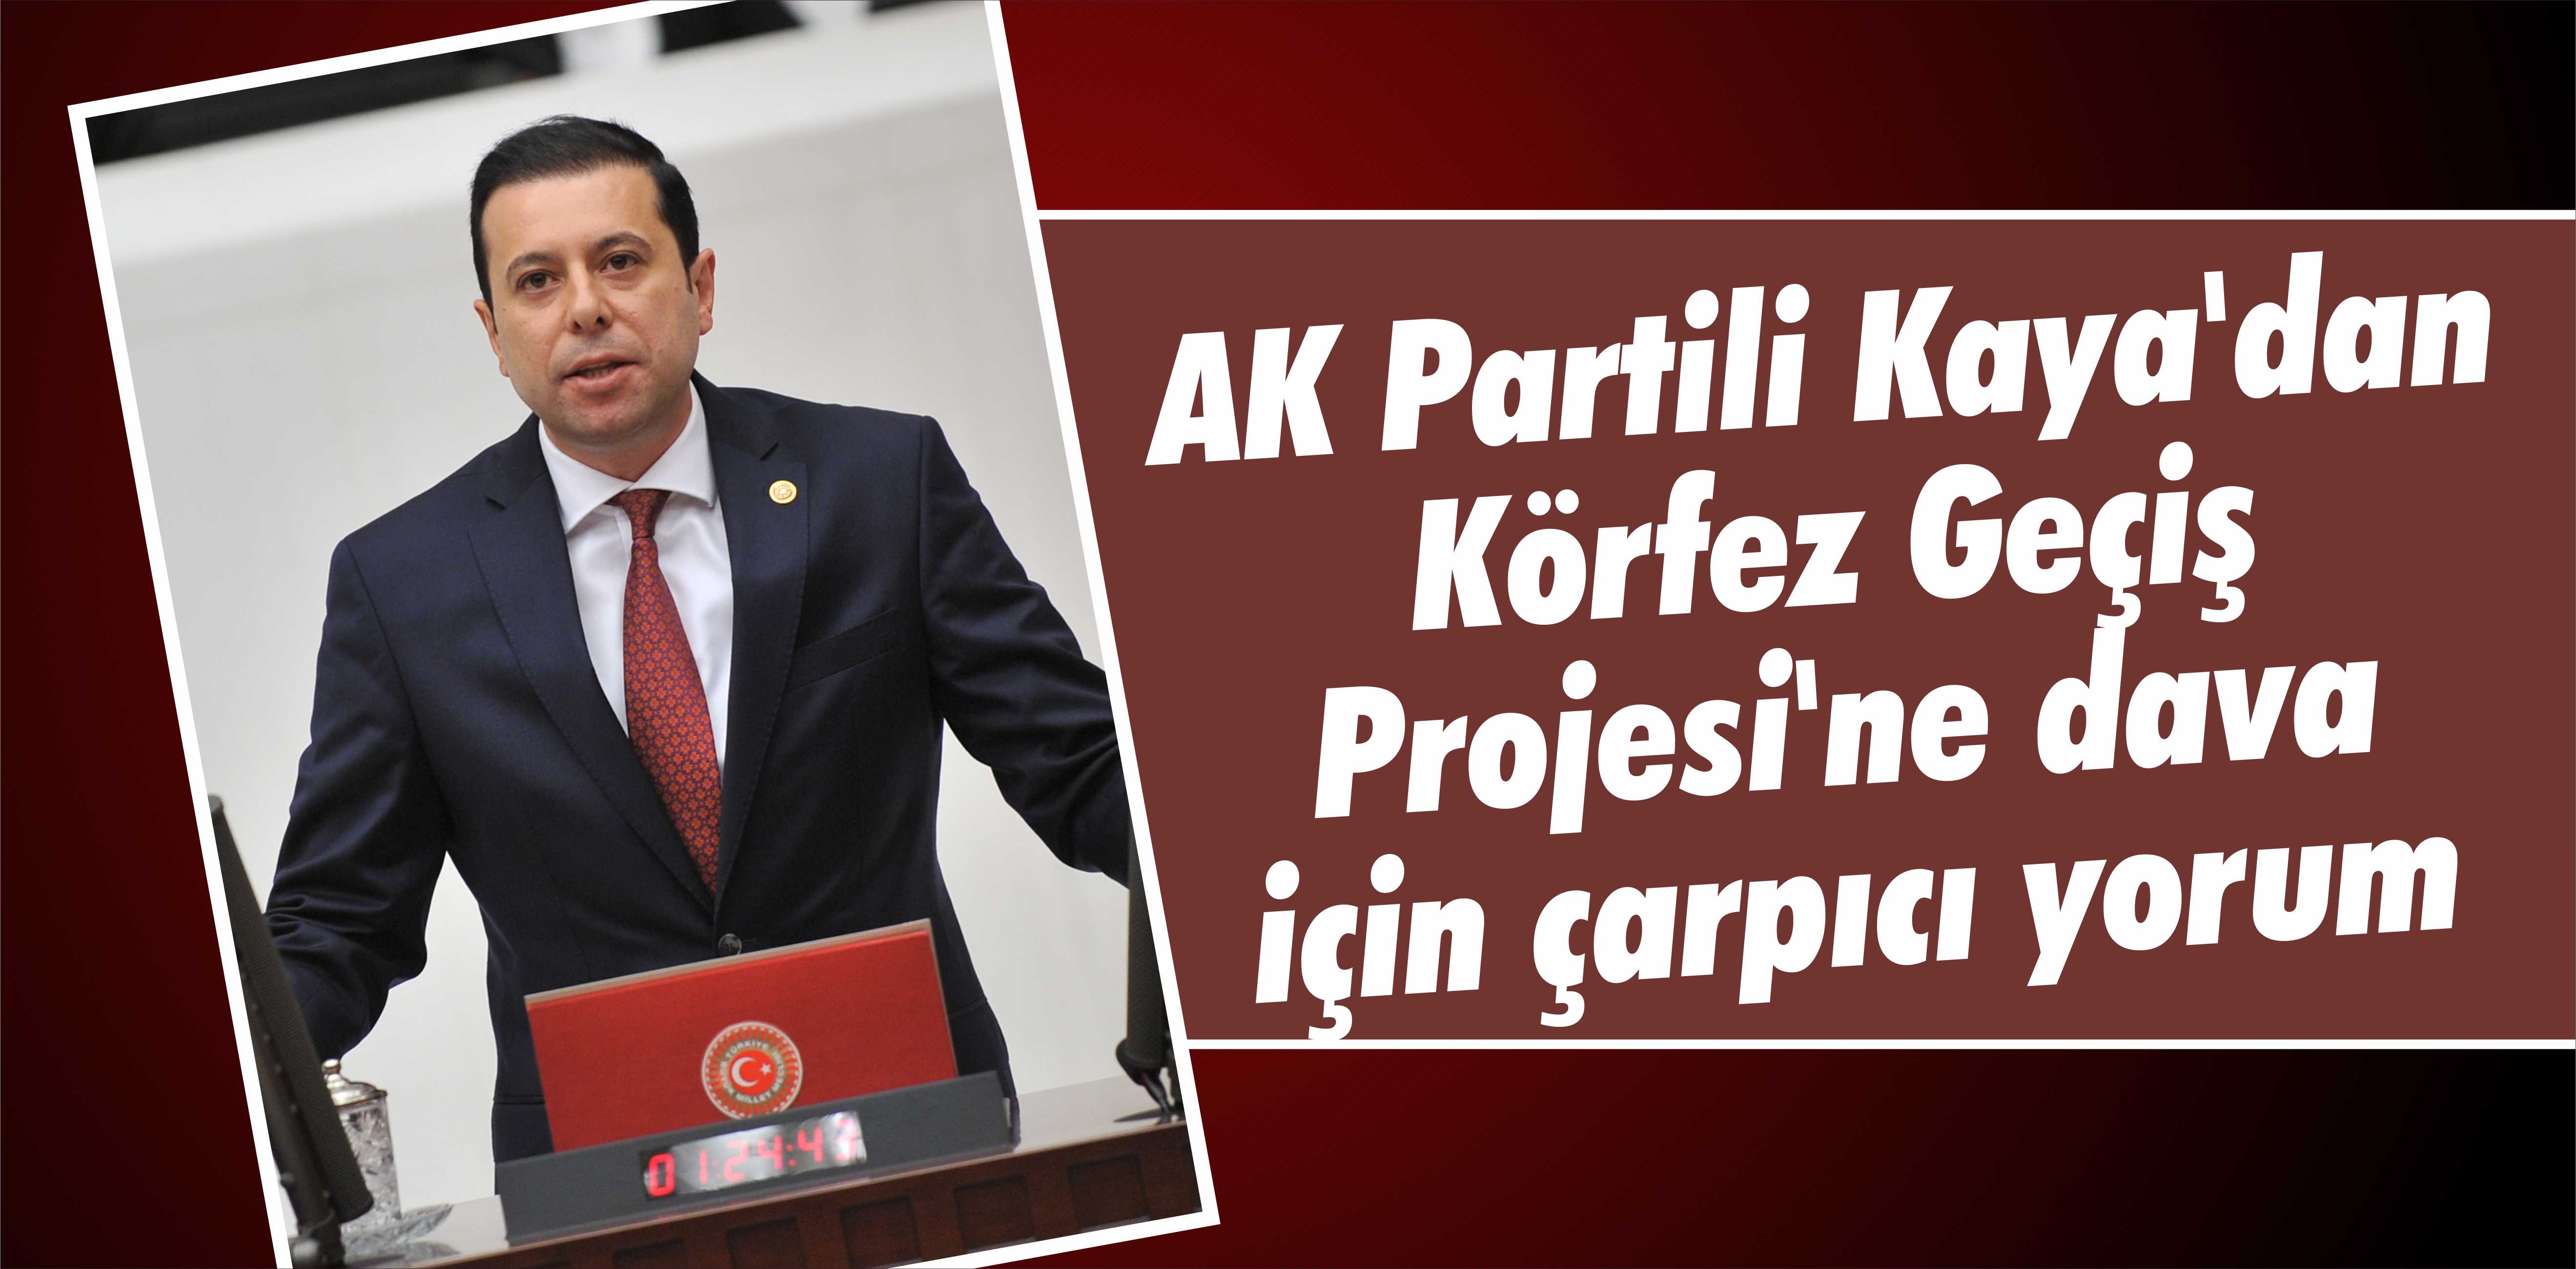 AK Partili Kaya’dan Körfez Geçiş Projesi’ne dava için çarpıcı yorum